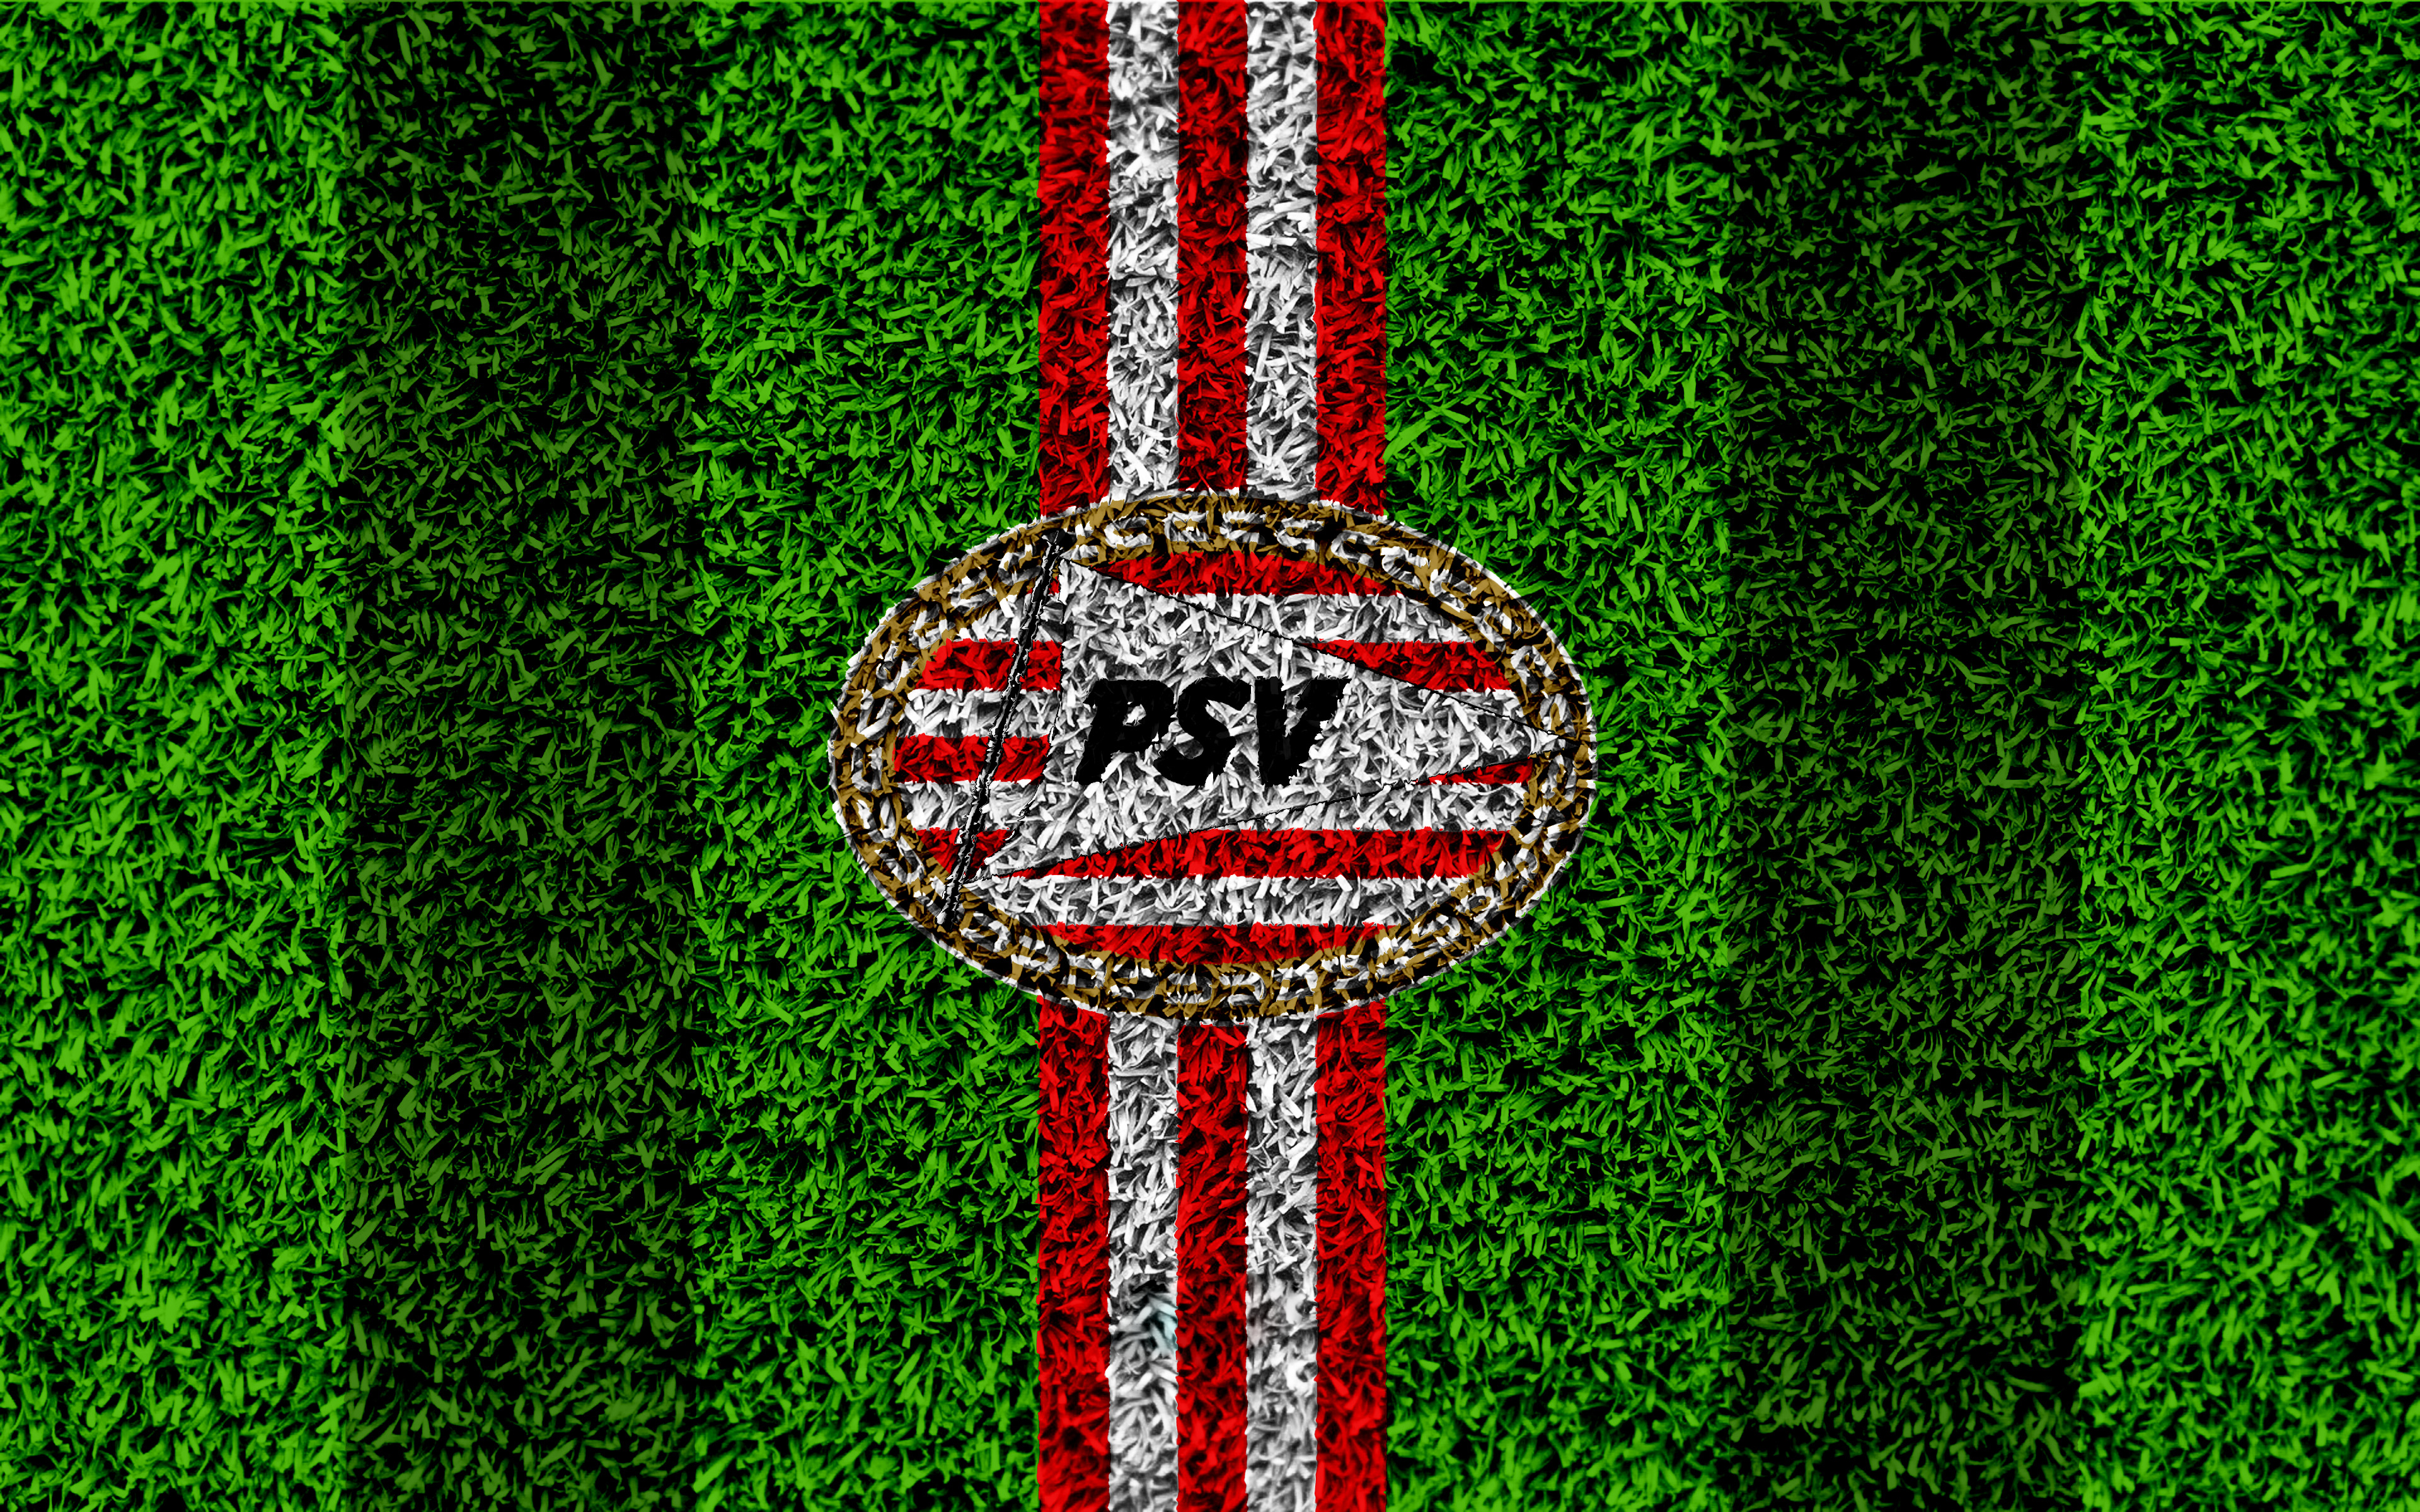 Emblem Logo Psv Eindhoven Soccer 3840x2400